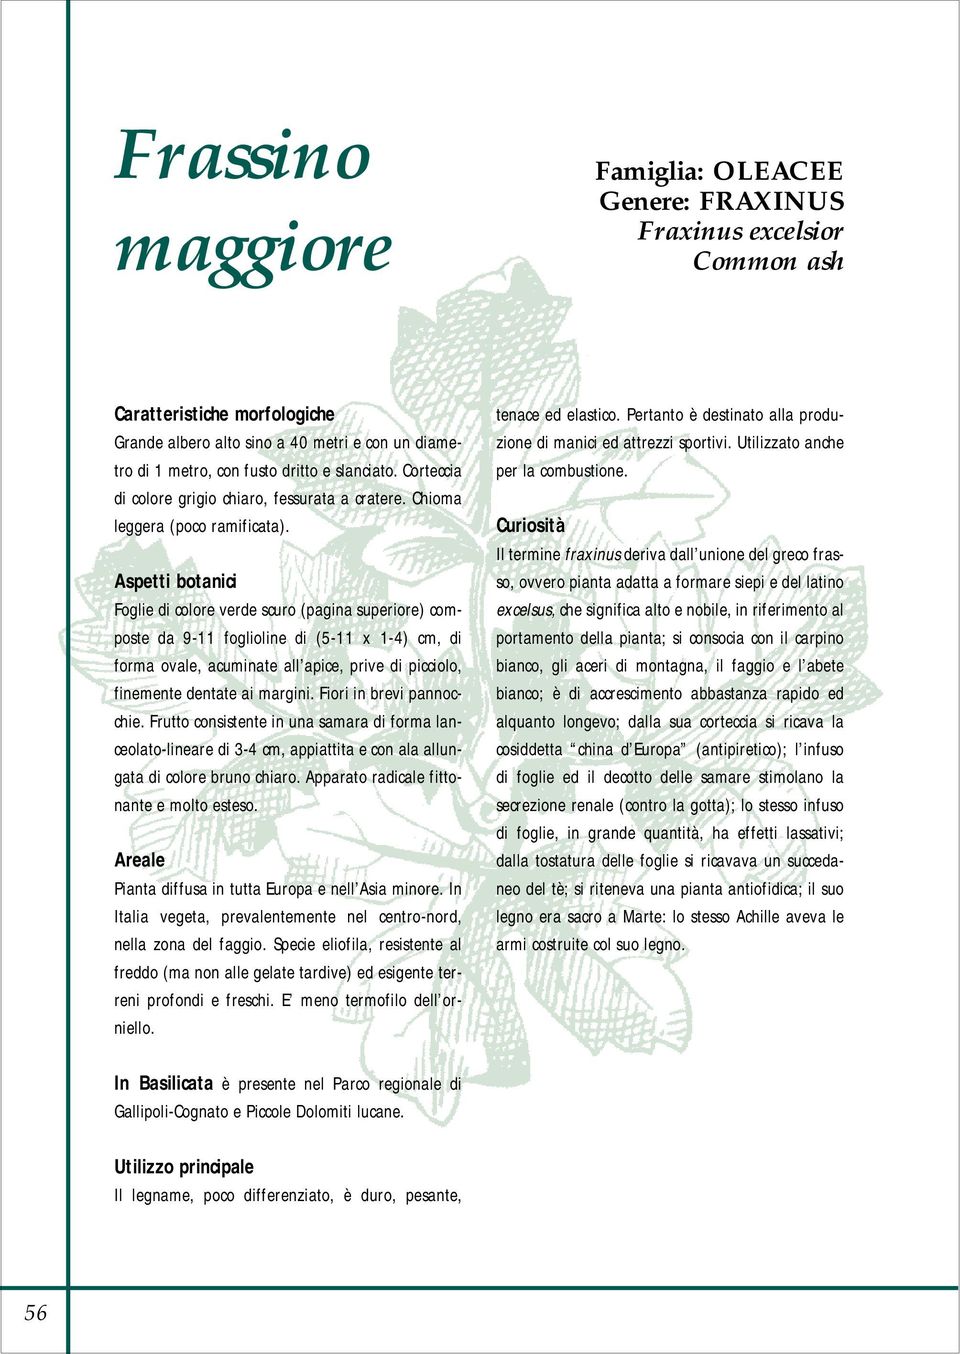 Aspetti botanici Foglie di colore verde scuro (pagina superiore) composte da 9-11 foglioline di (5-11 x 1-4) cm, di forma ovale, acuminate all apice, prive di picciolo, finemente dentate ai margini.